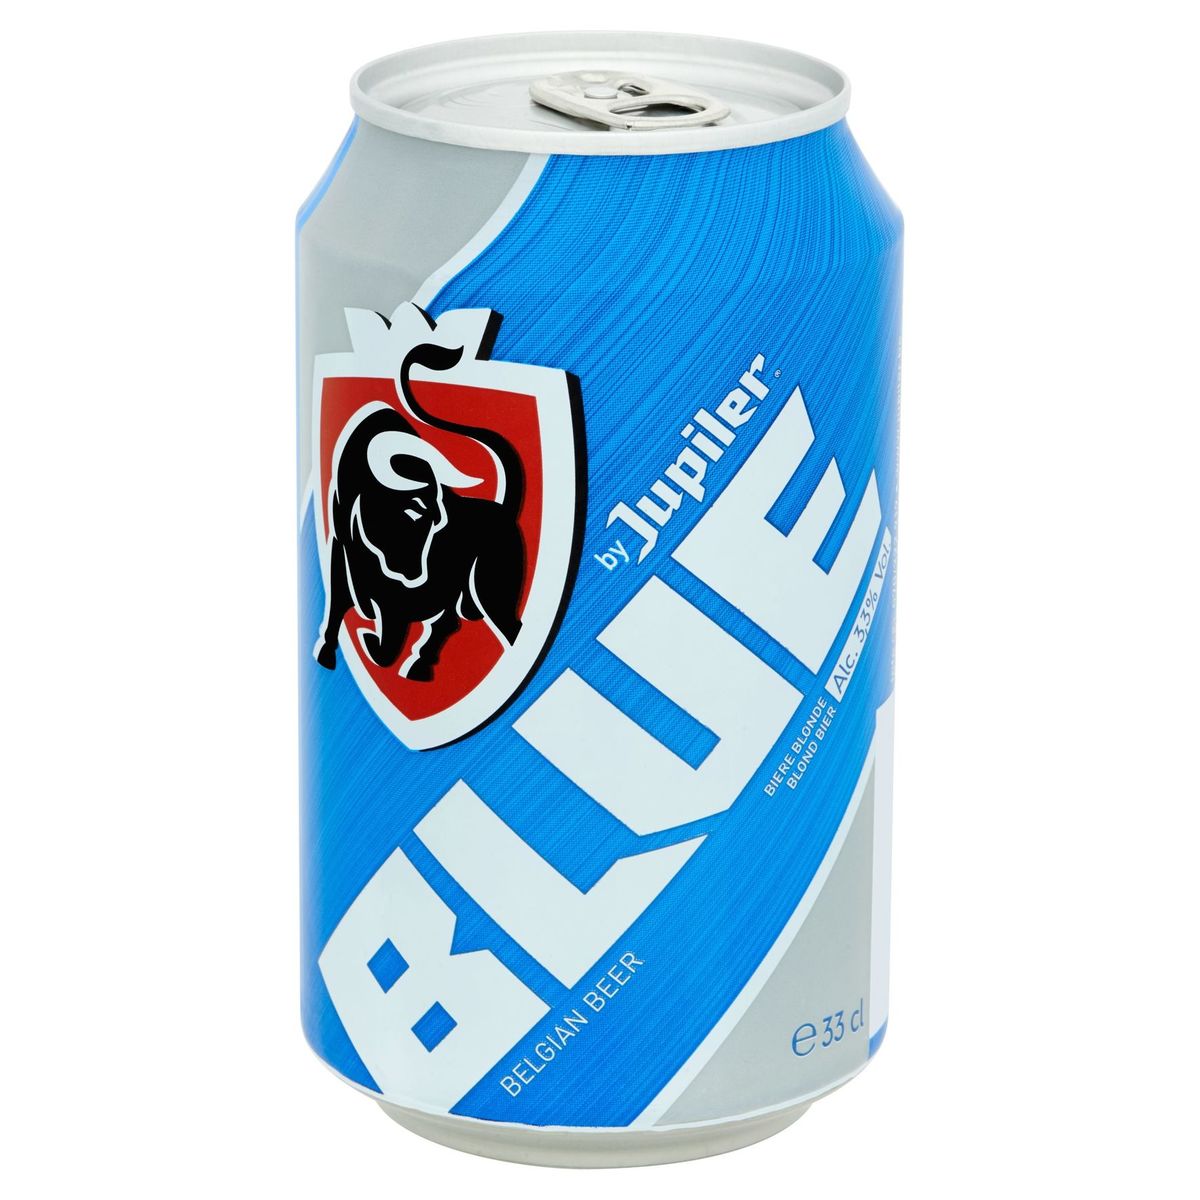 Jupiler Blue Blond Bier Blik 33 cl